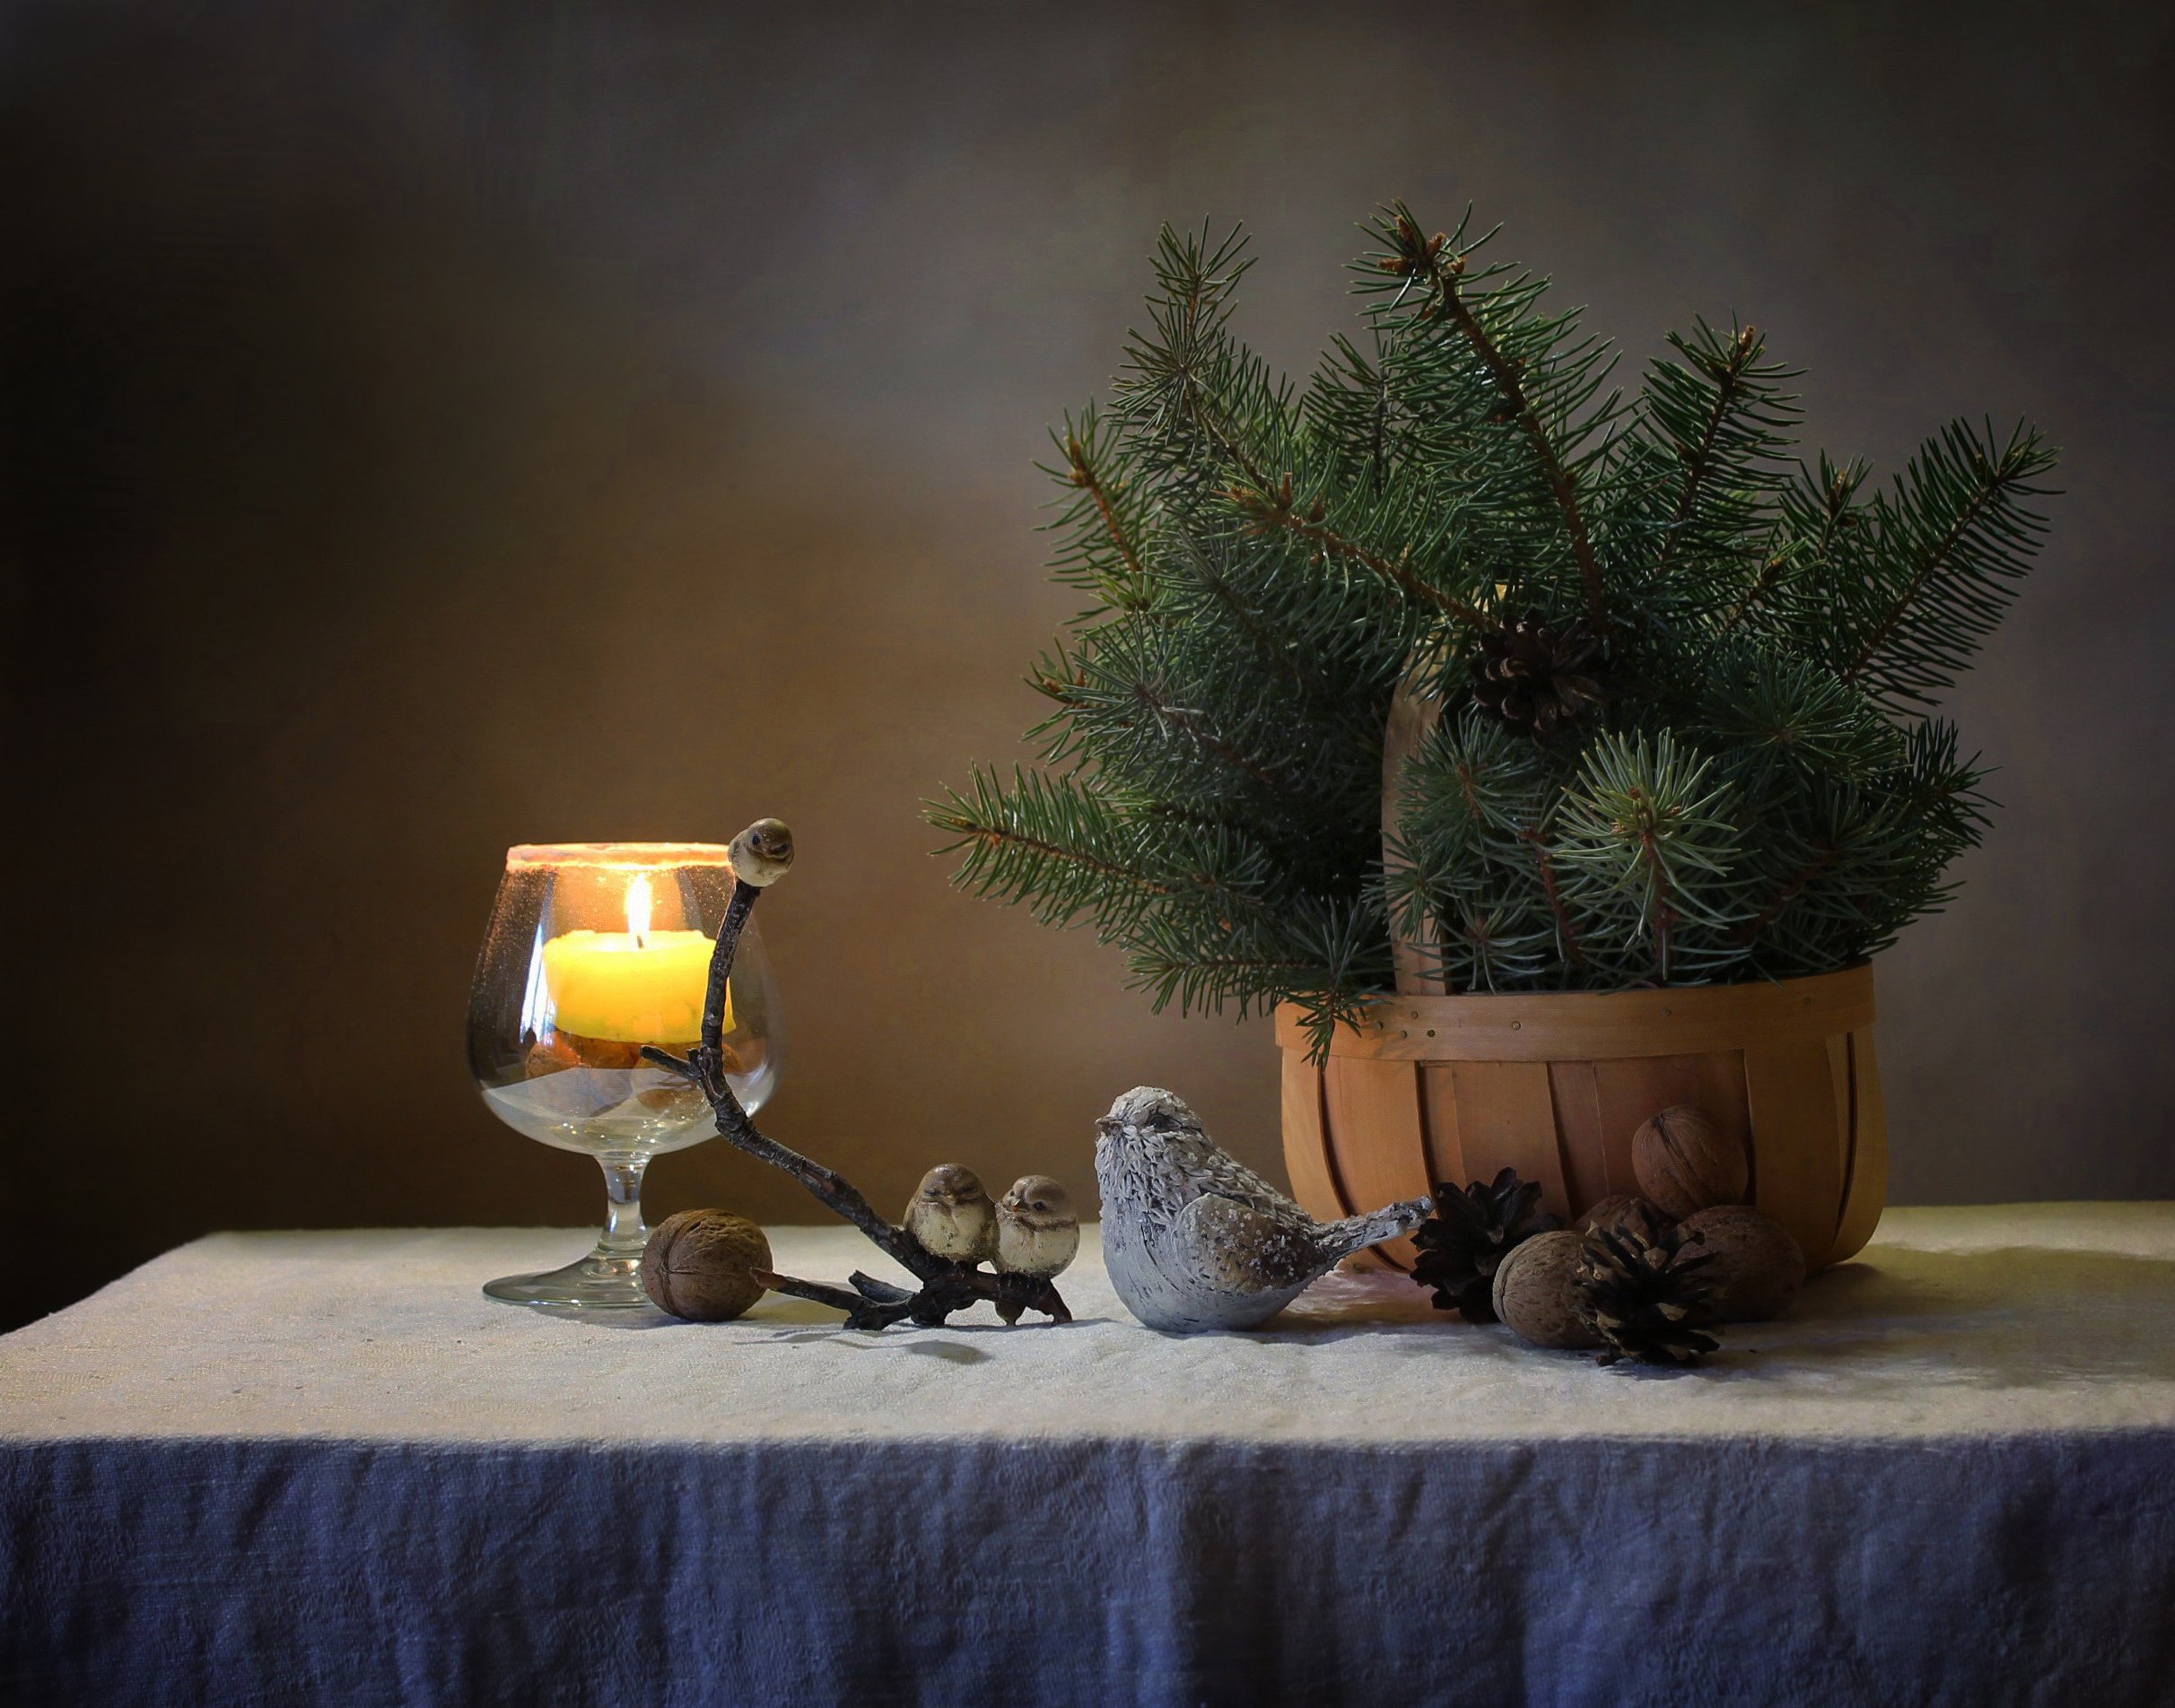 зима, натюрморт, новый год, елка, птички, свеча, Ковалева Светлана